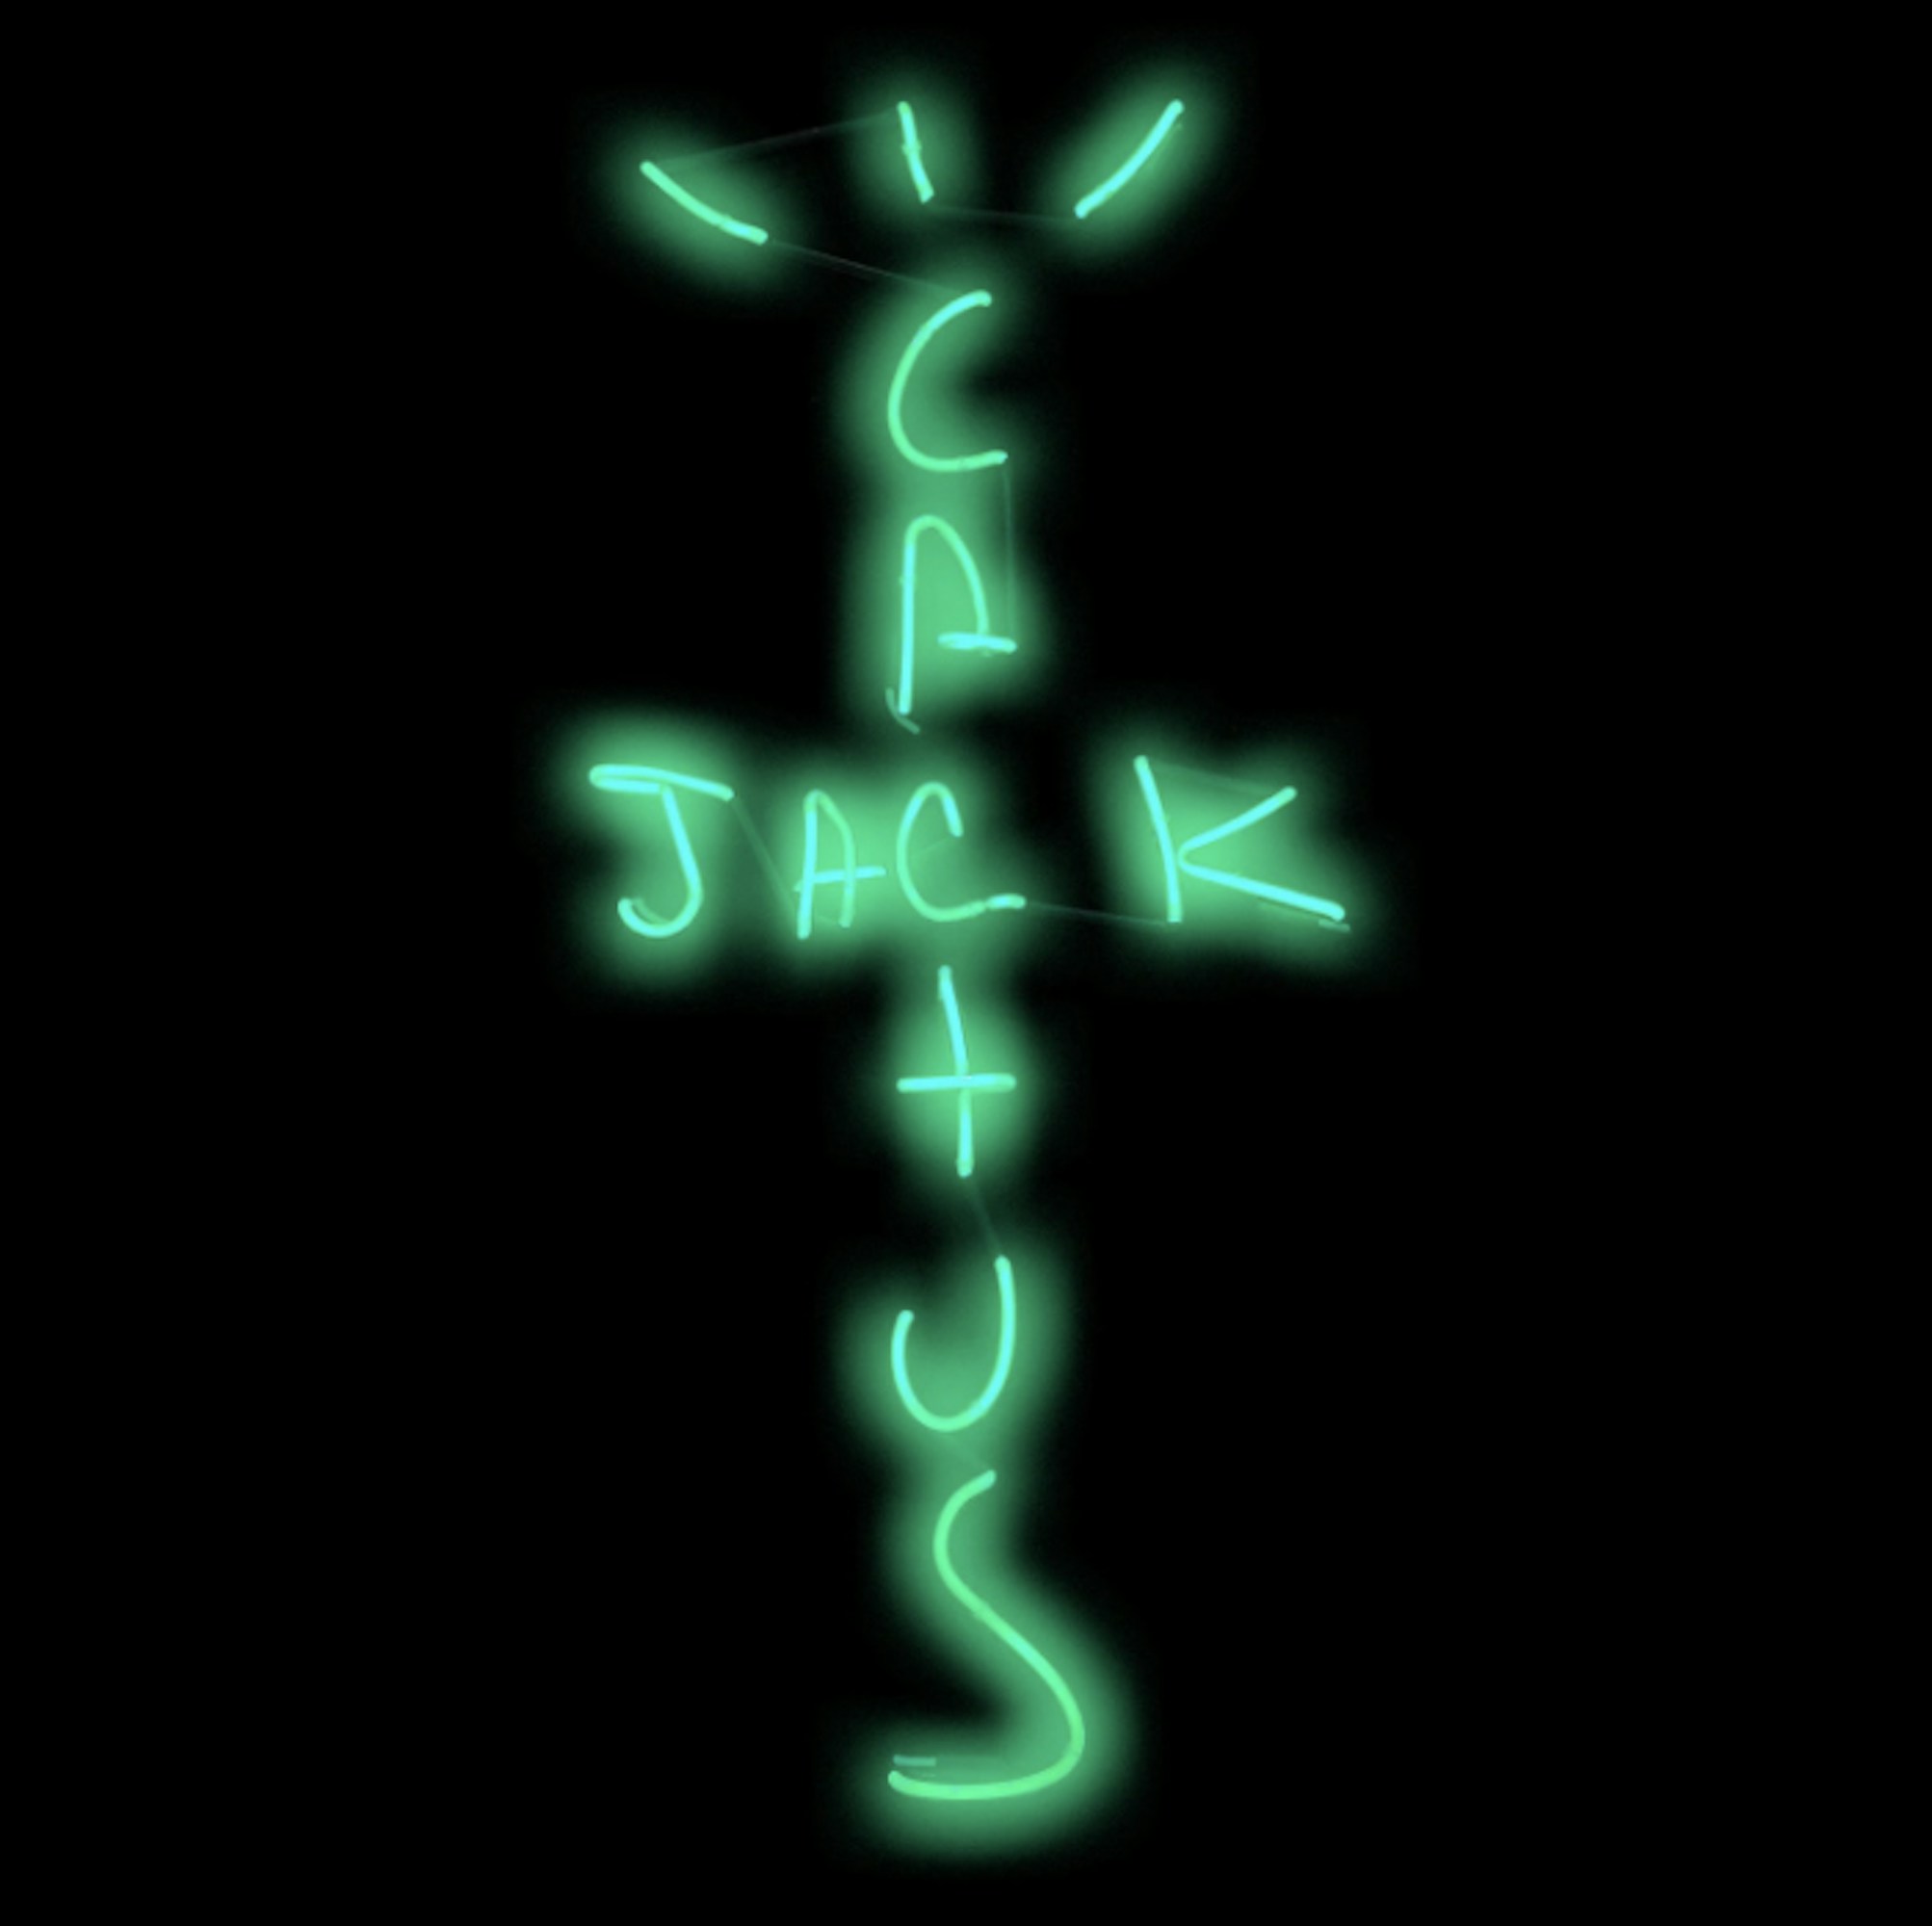 Travis Scott Cactus Jack Logo